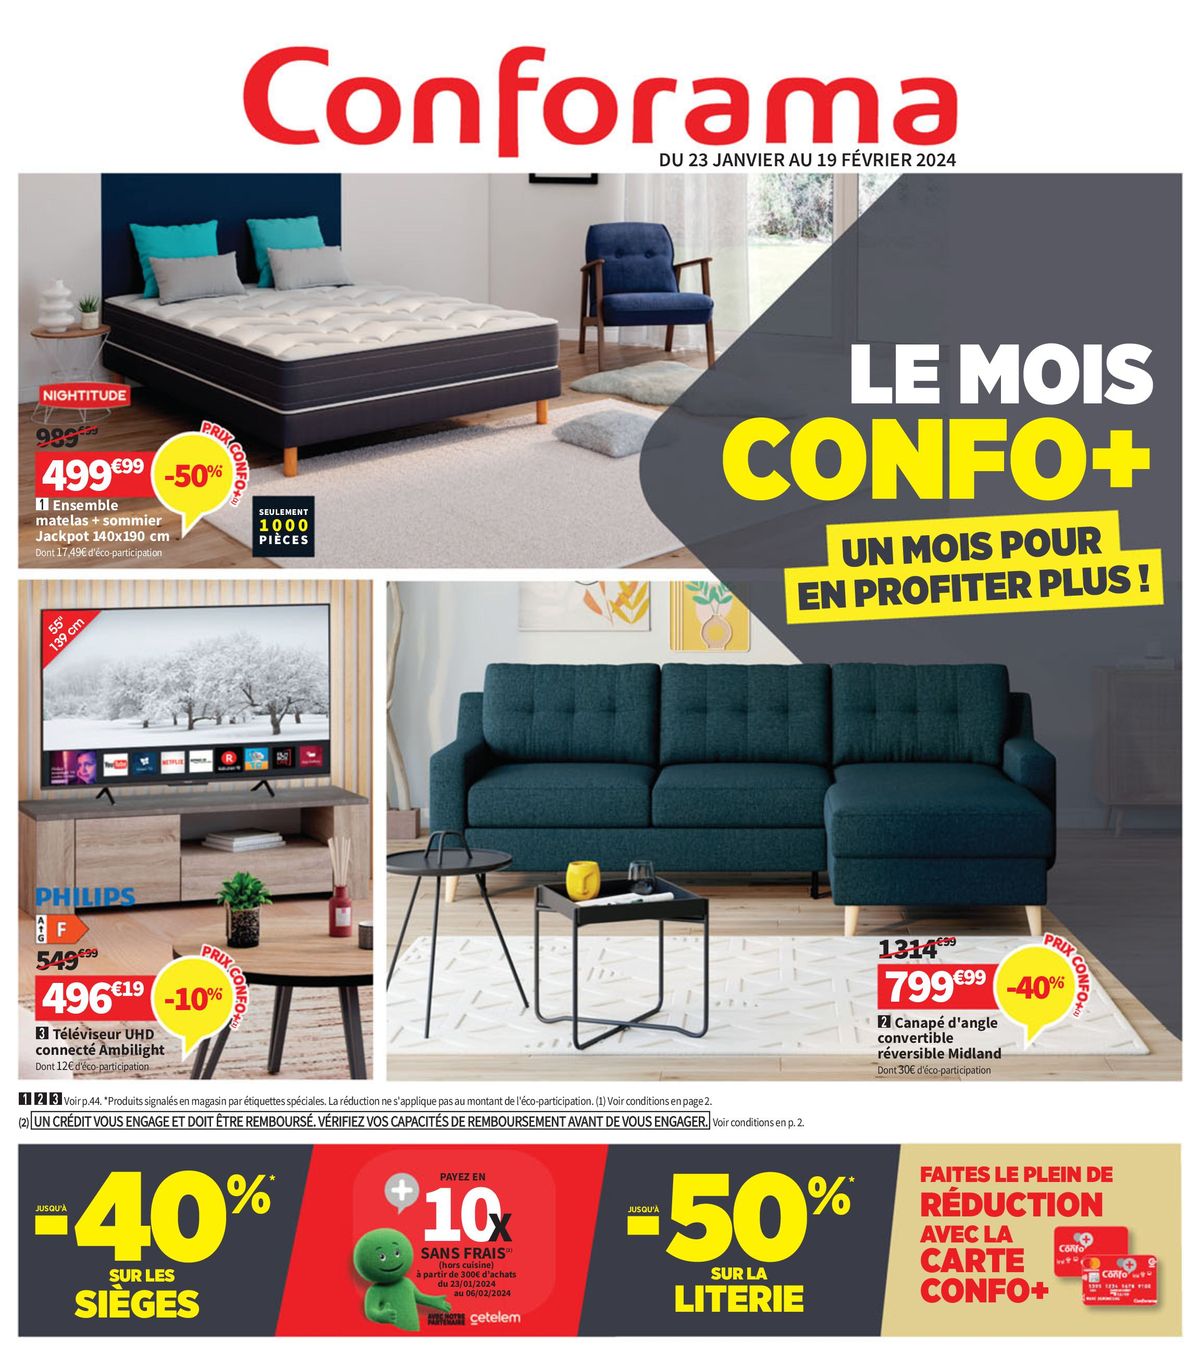 Catalogue Le mois Confo Plus, page 00001